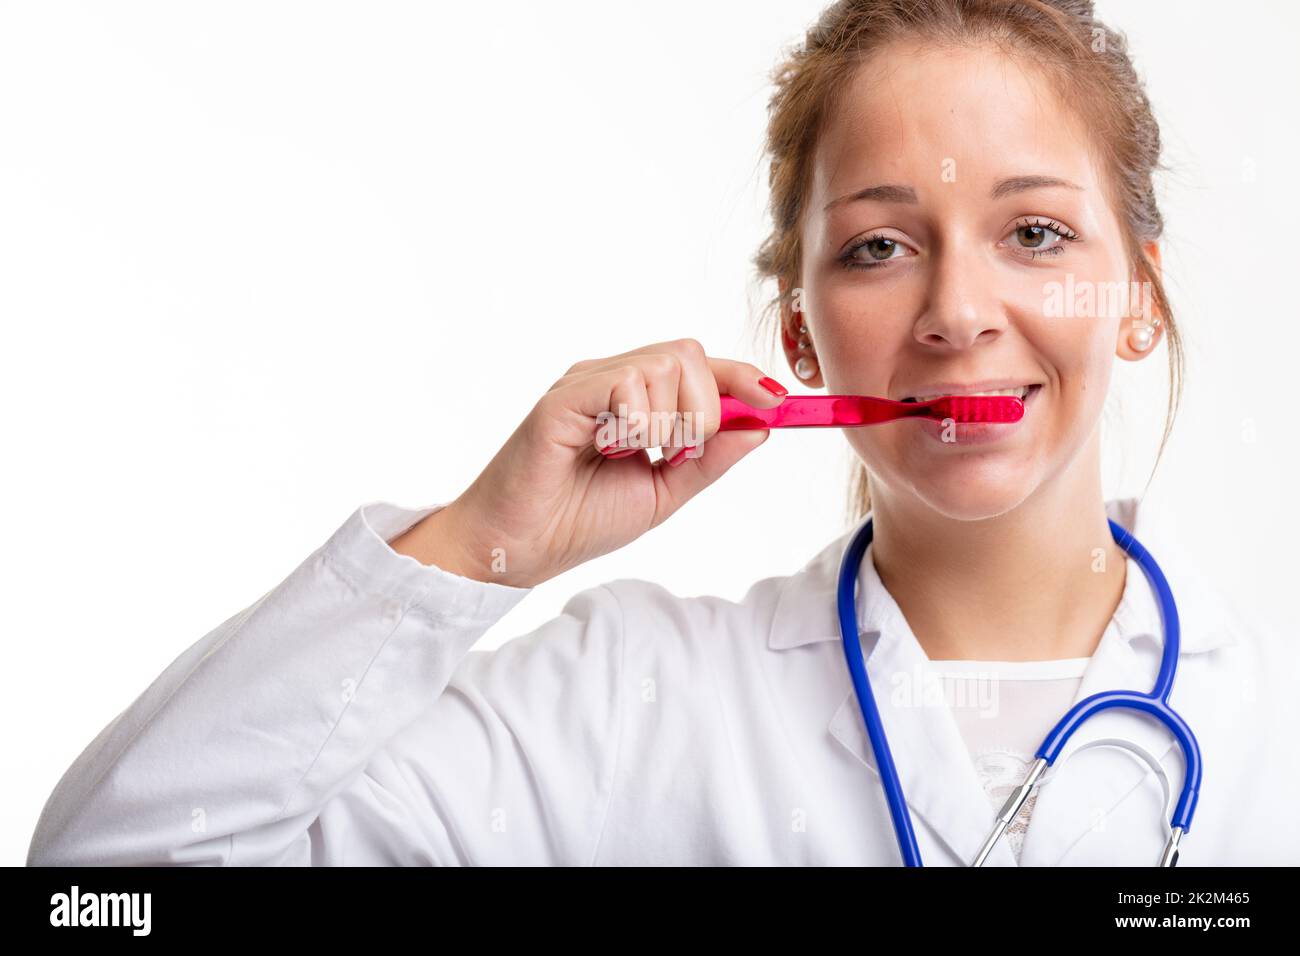 Enfermera dental joven o doctor cepillándose los dientes Foto de stock